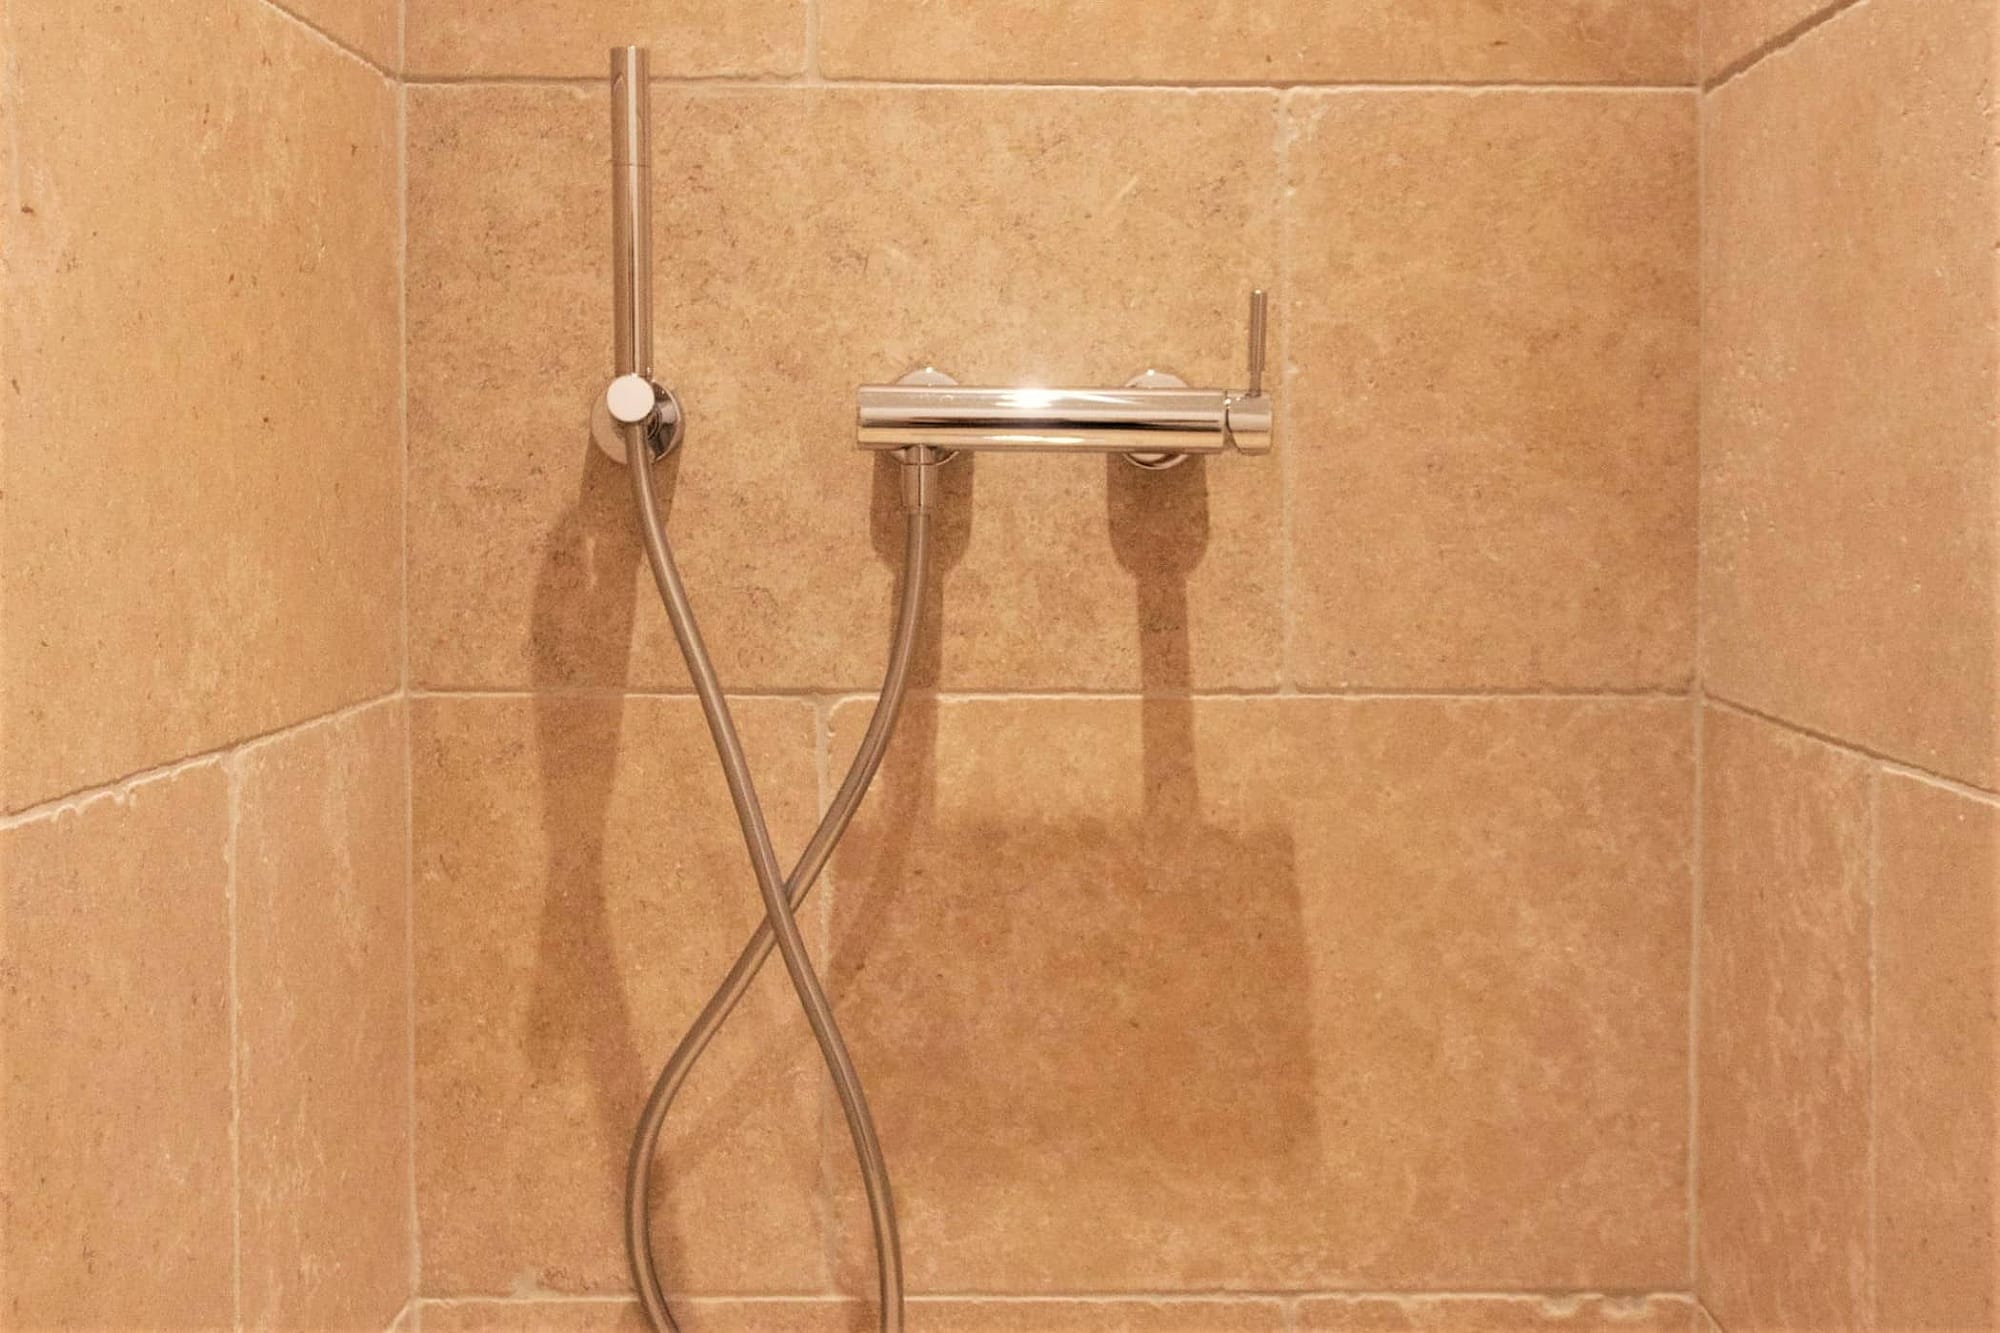 Douche dans salle de bain / Shower in the bathroom